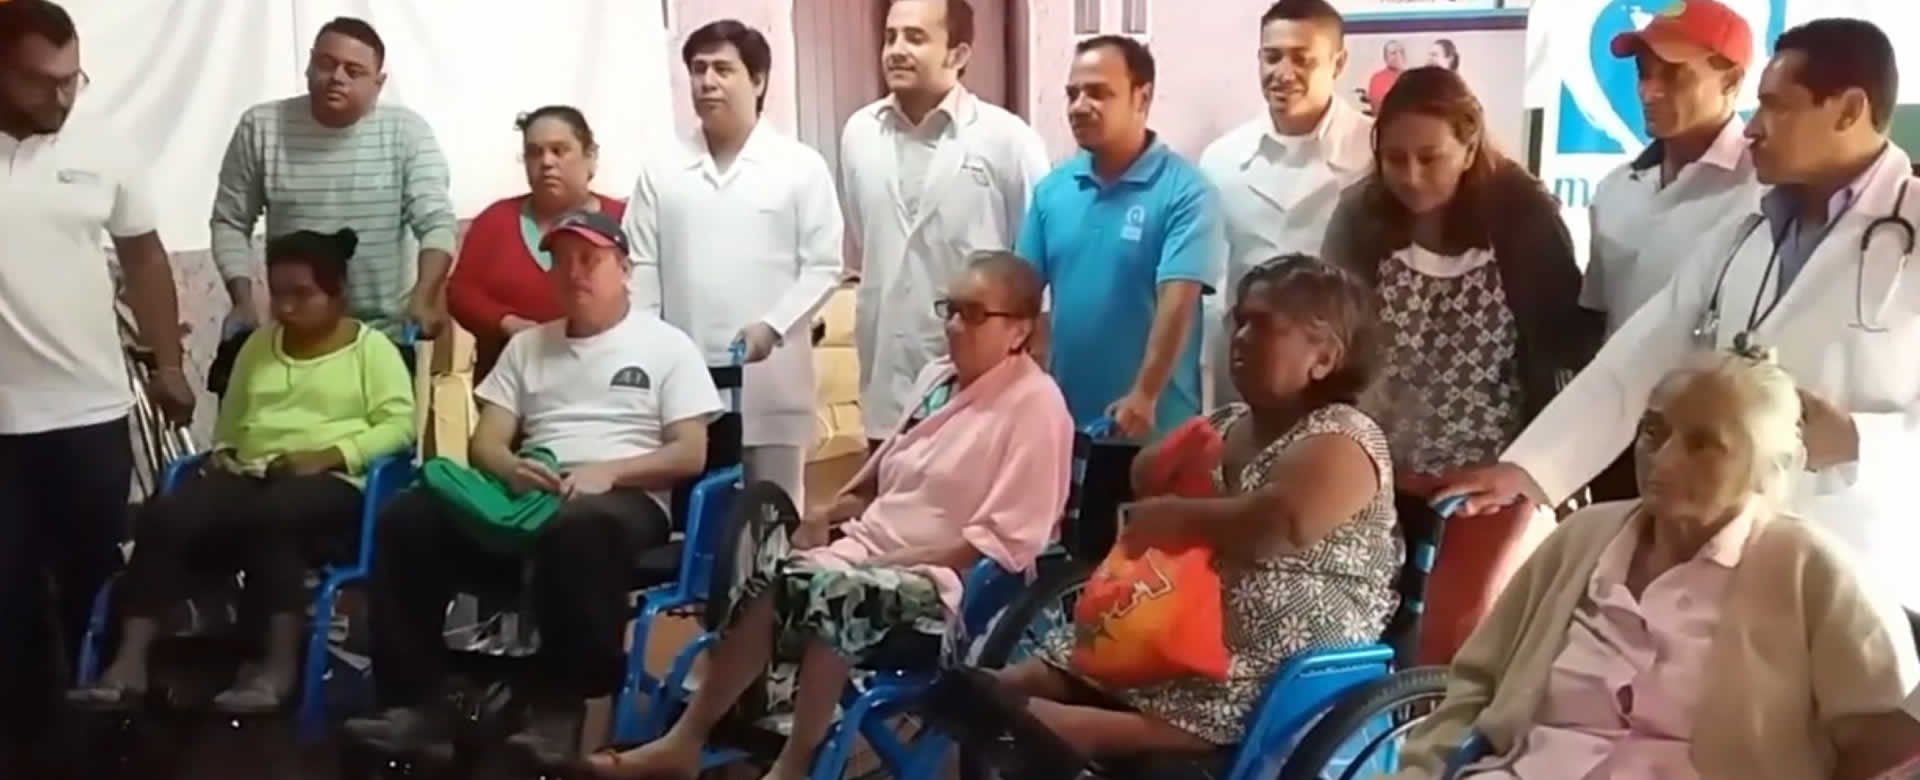 Ministerio de Salud entrega sillas de ruedas en Jinotega